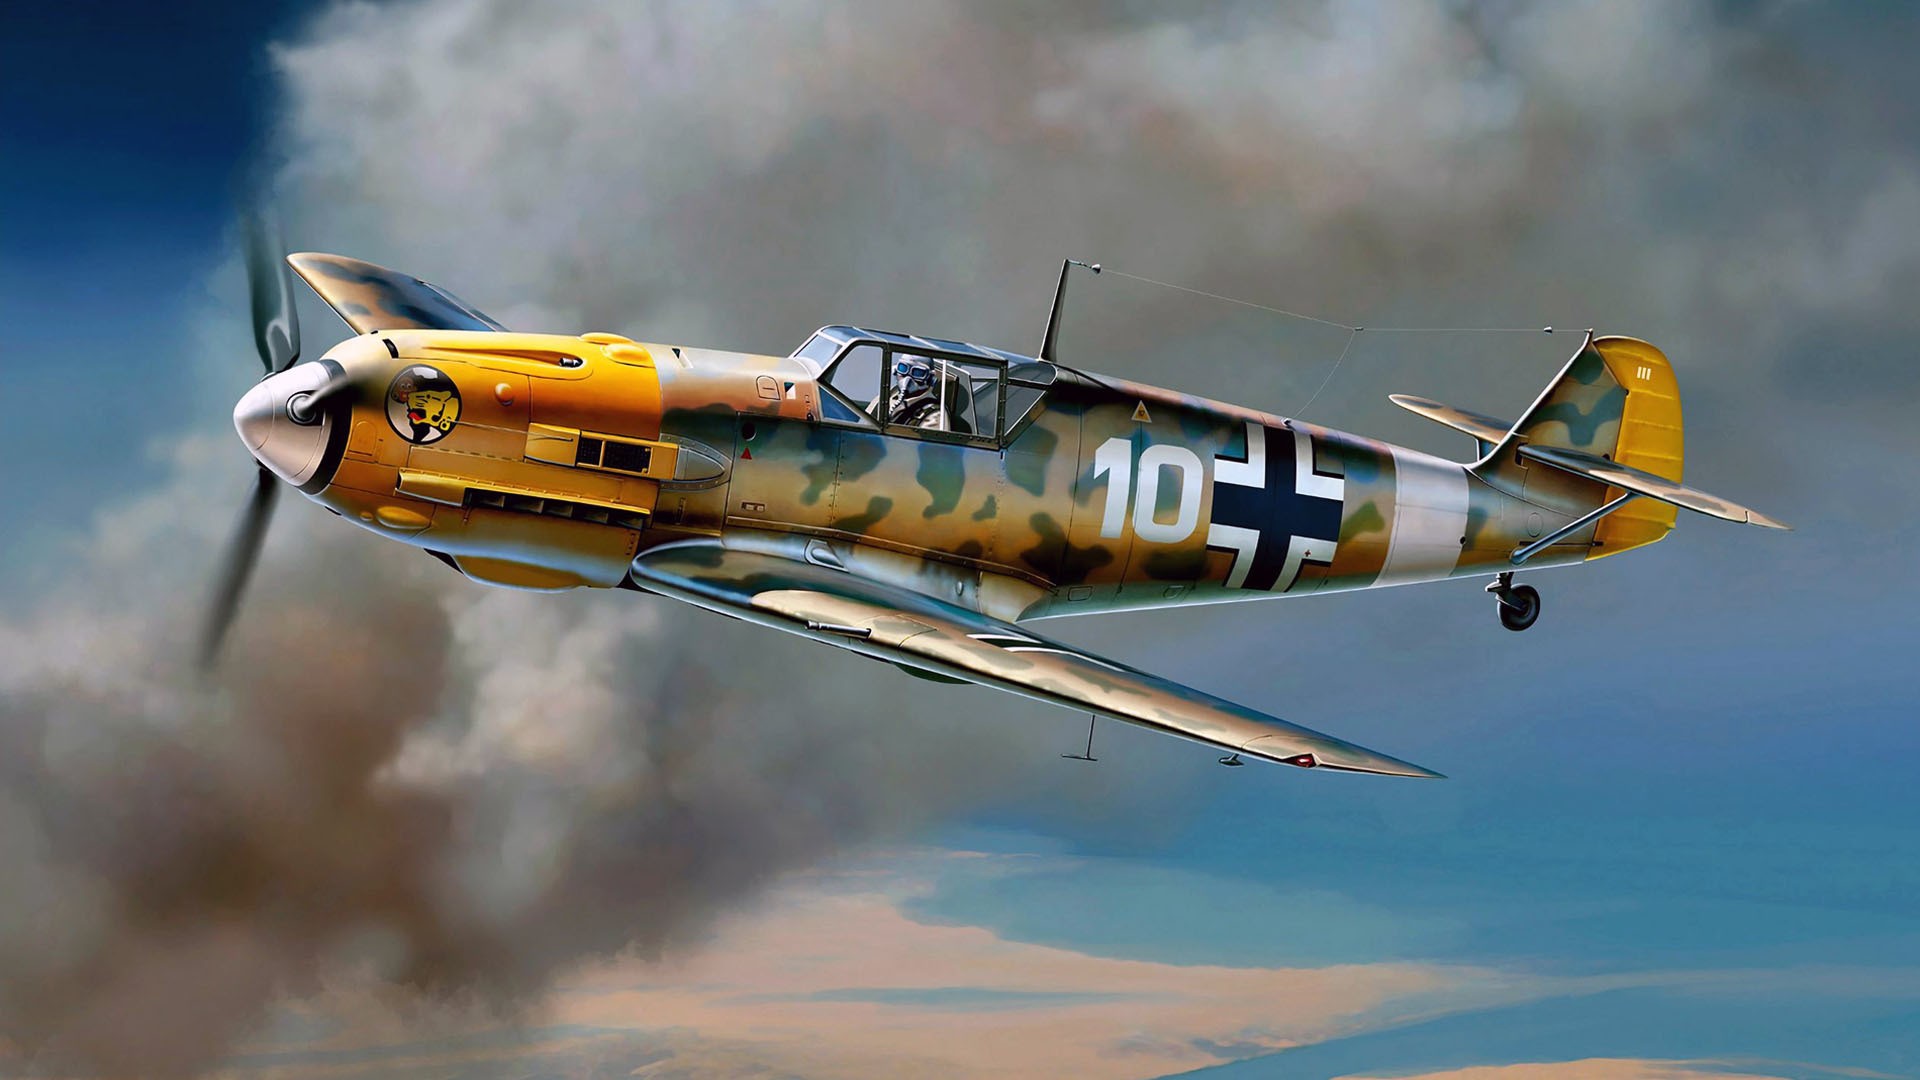 Messerschmitt Messerschmitt Bf 109 Luftwaffe Aircraft Military 